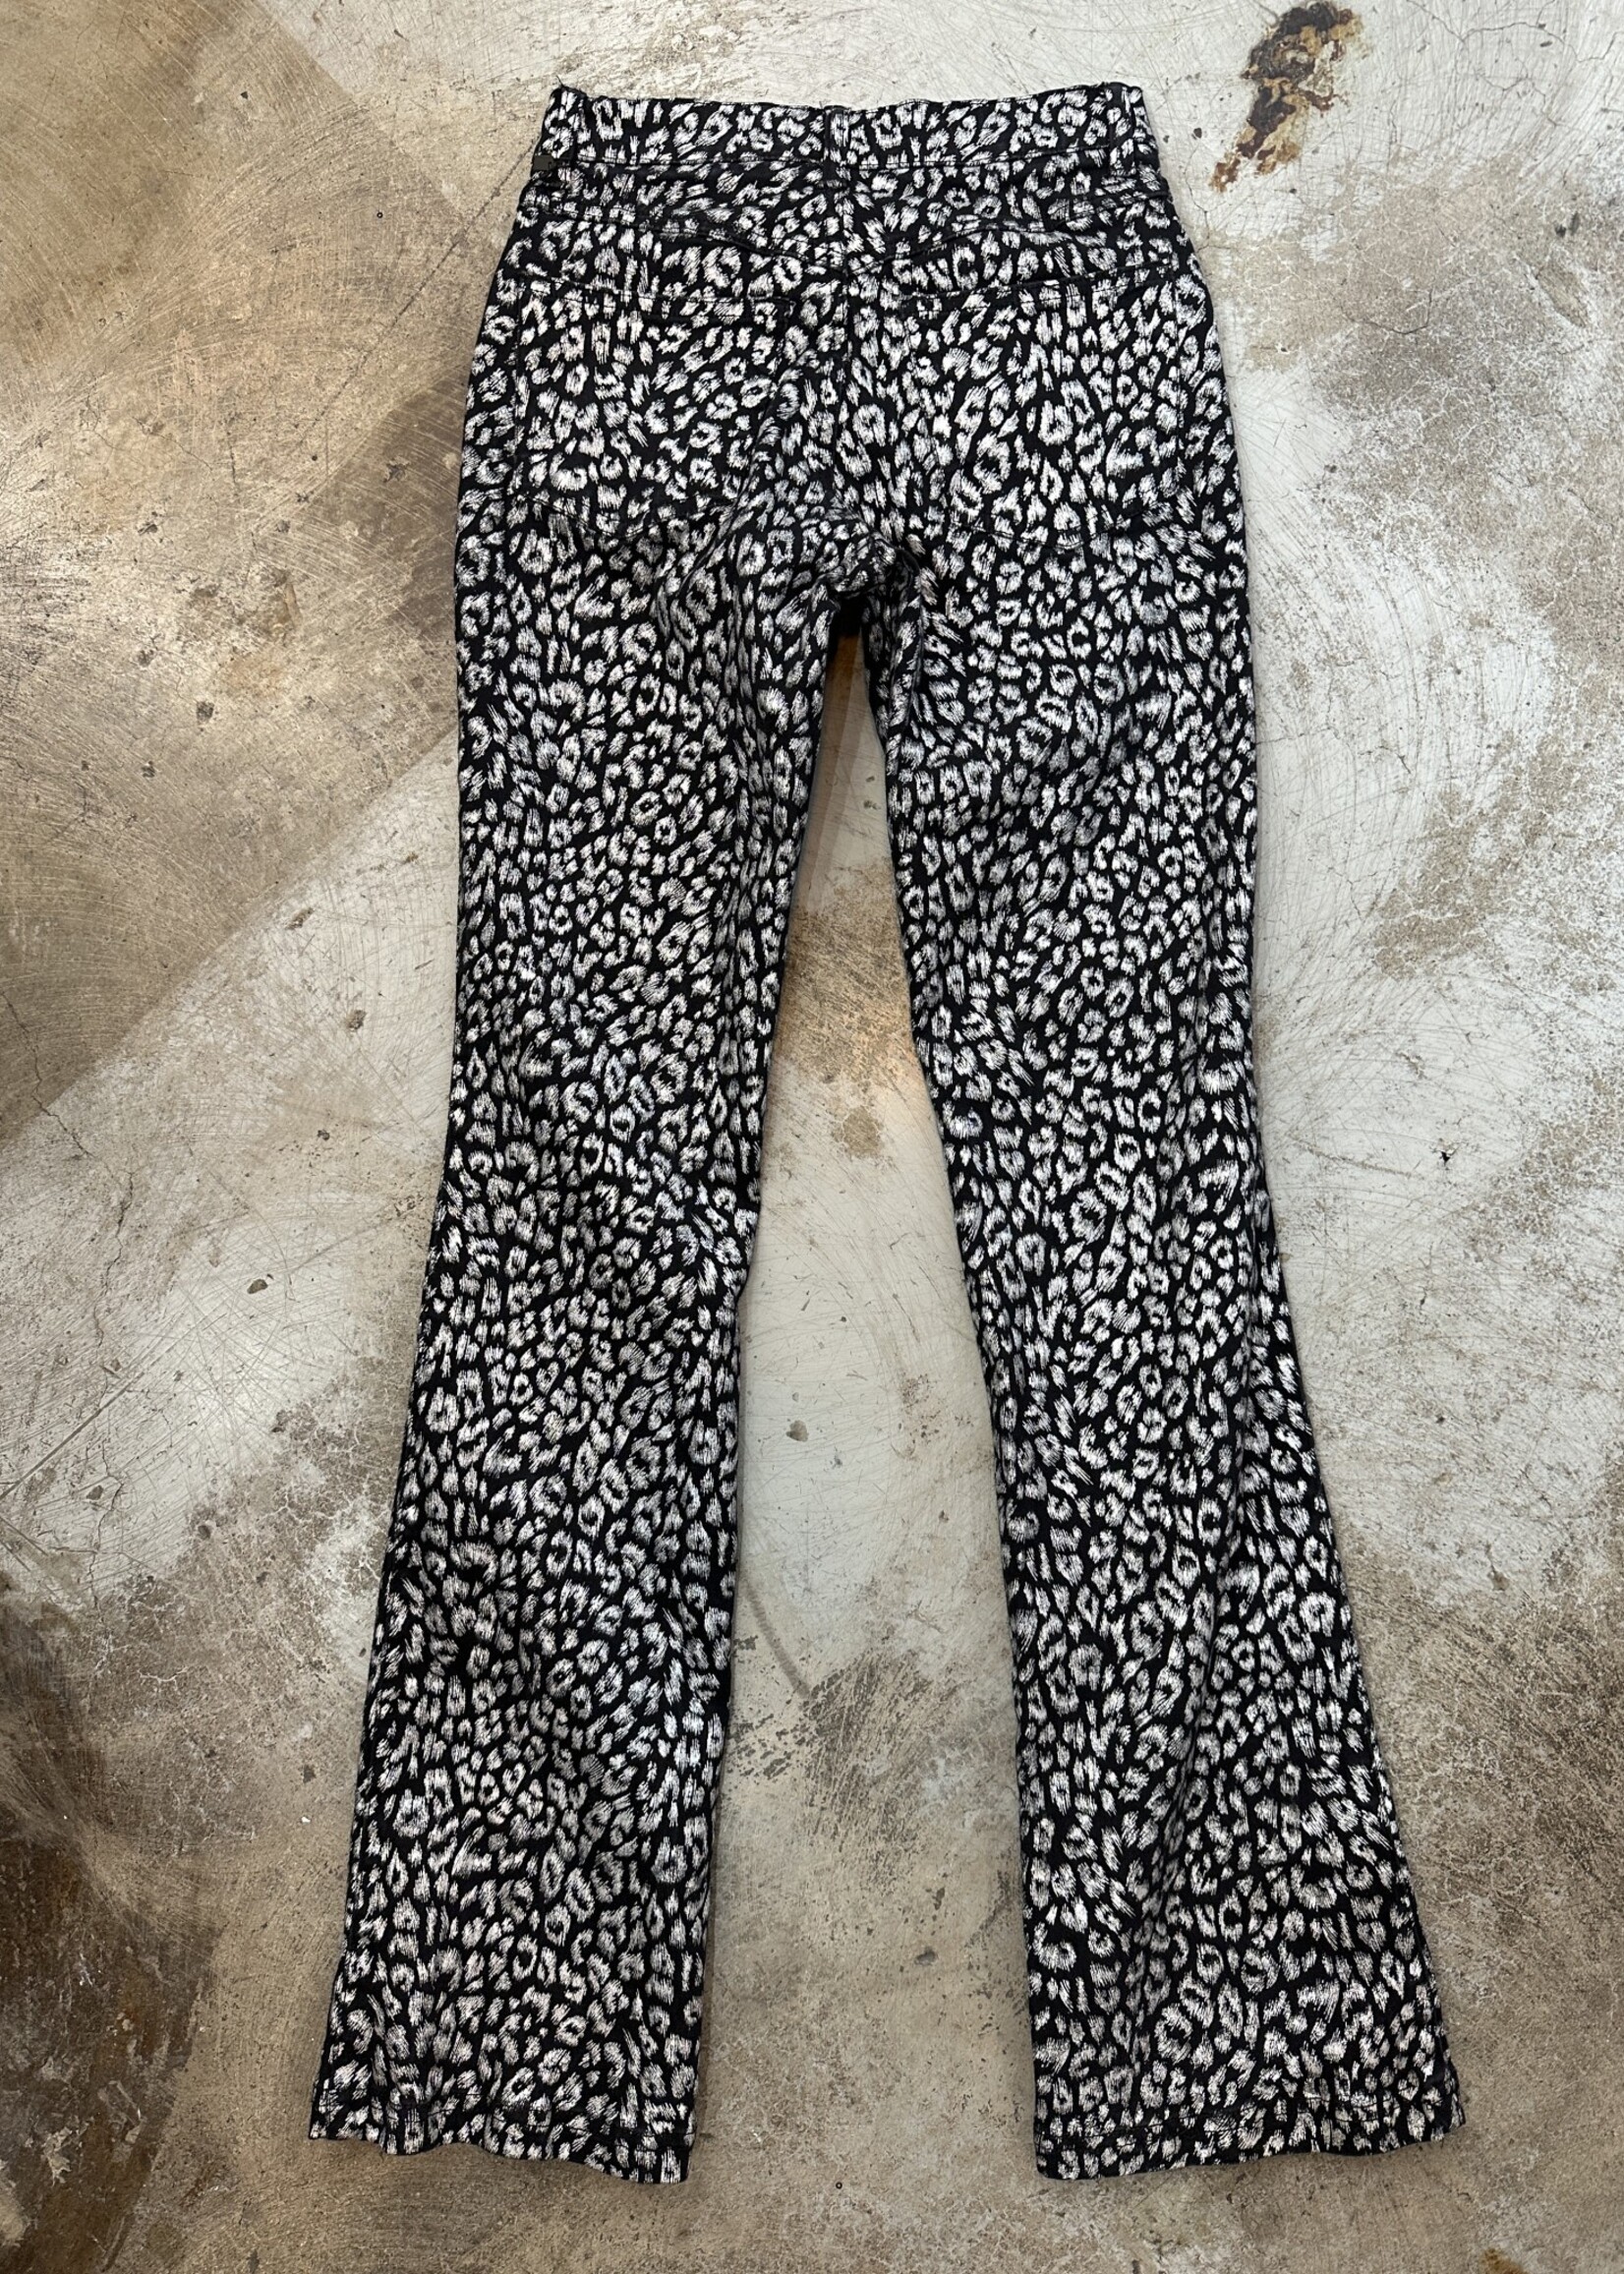 RVT Silver Cheetah Print Pants 24